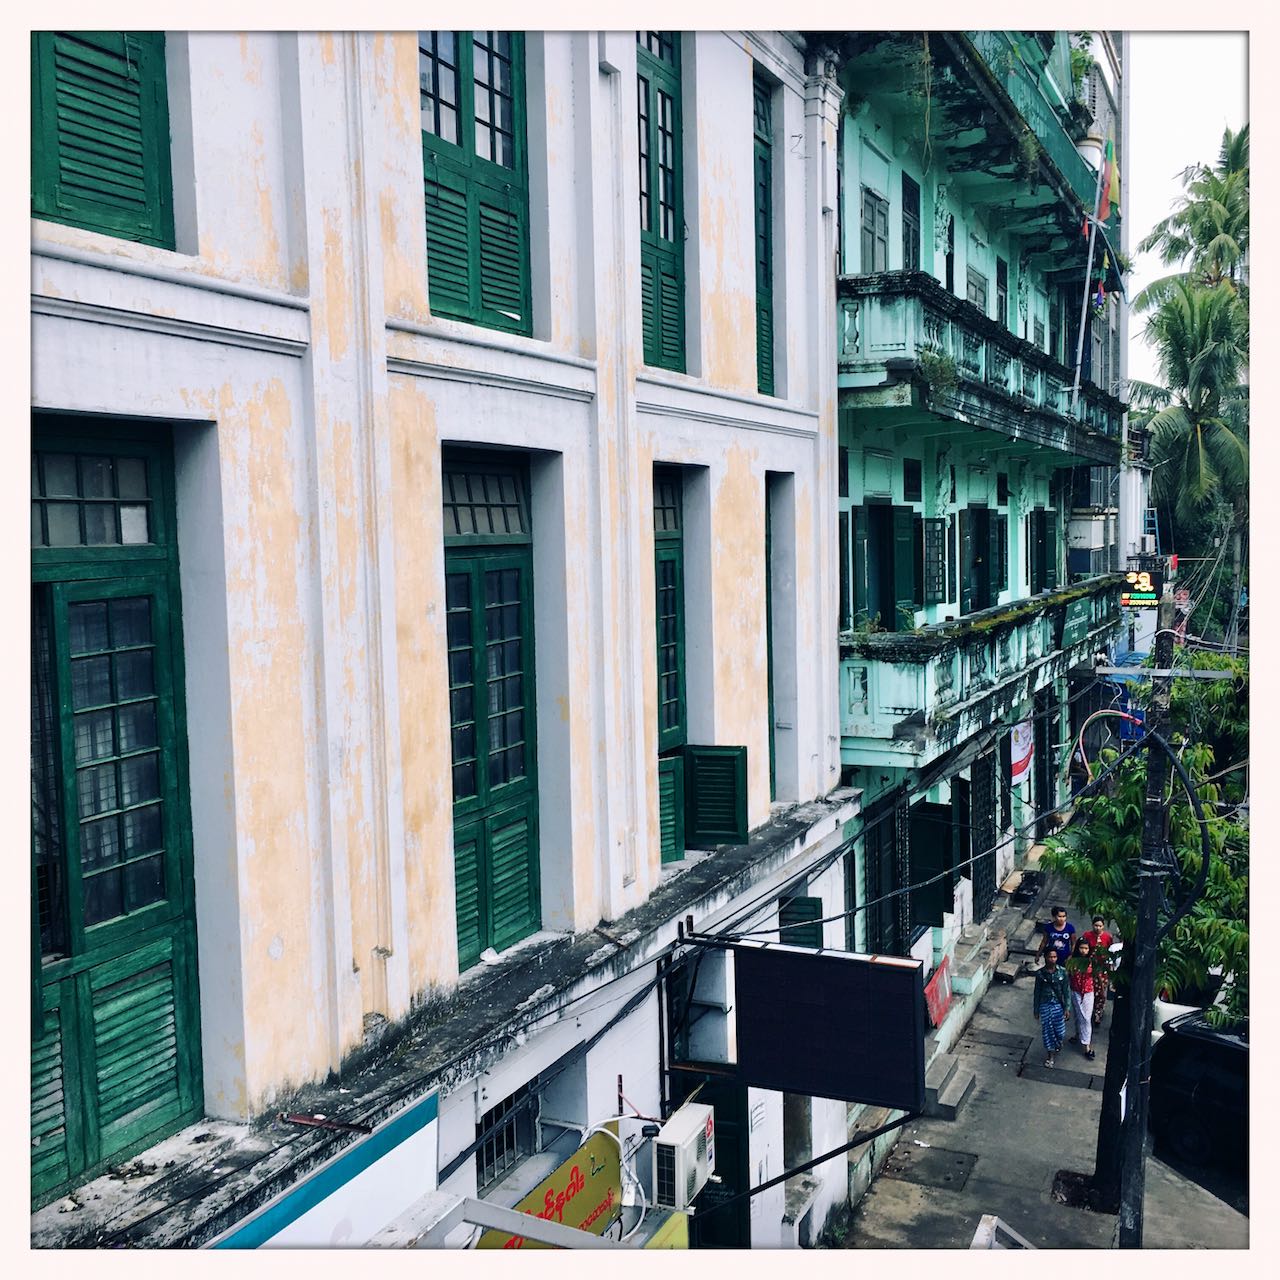 Taking a wander in Downtown Yangon